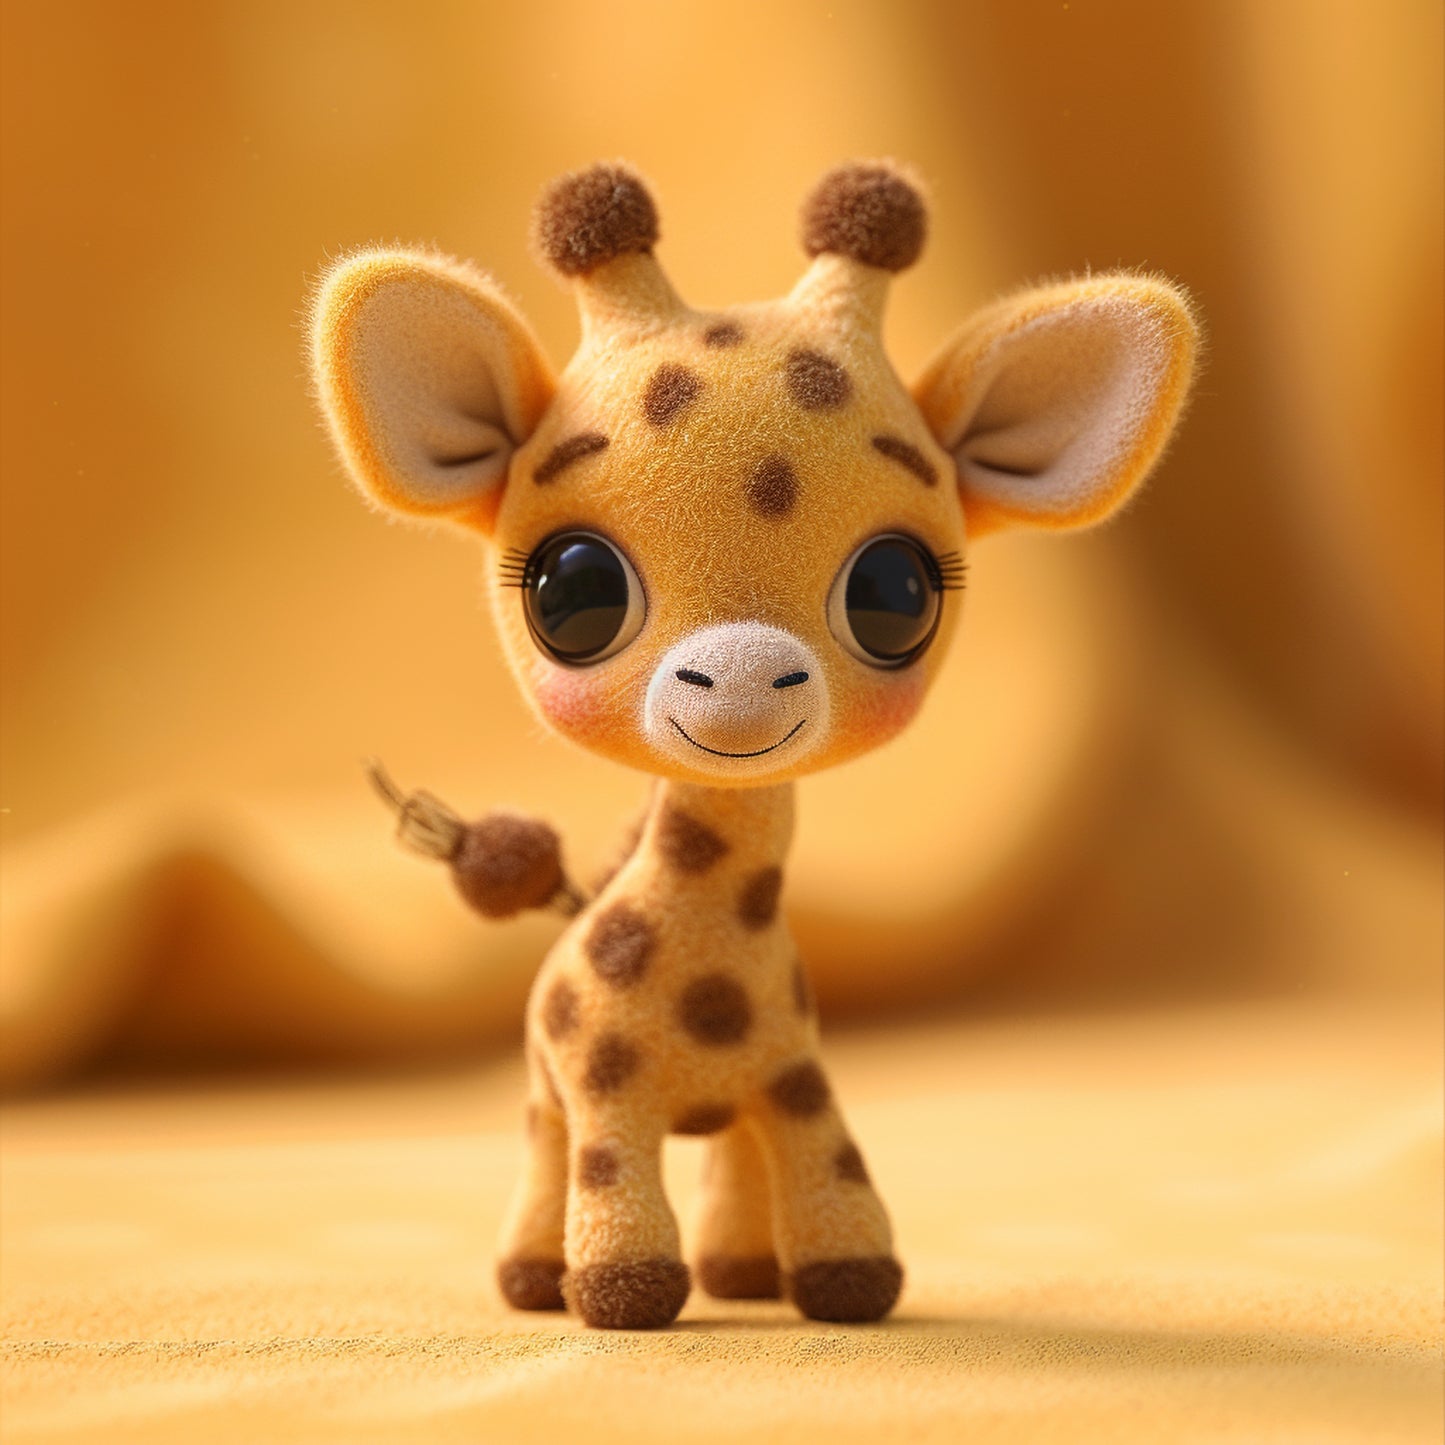 Adorable Cartoon Baby Giraffe with a Friendly Smile